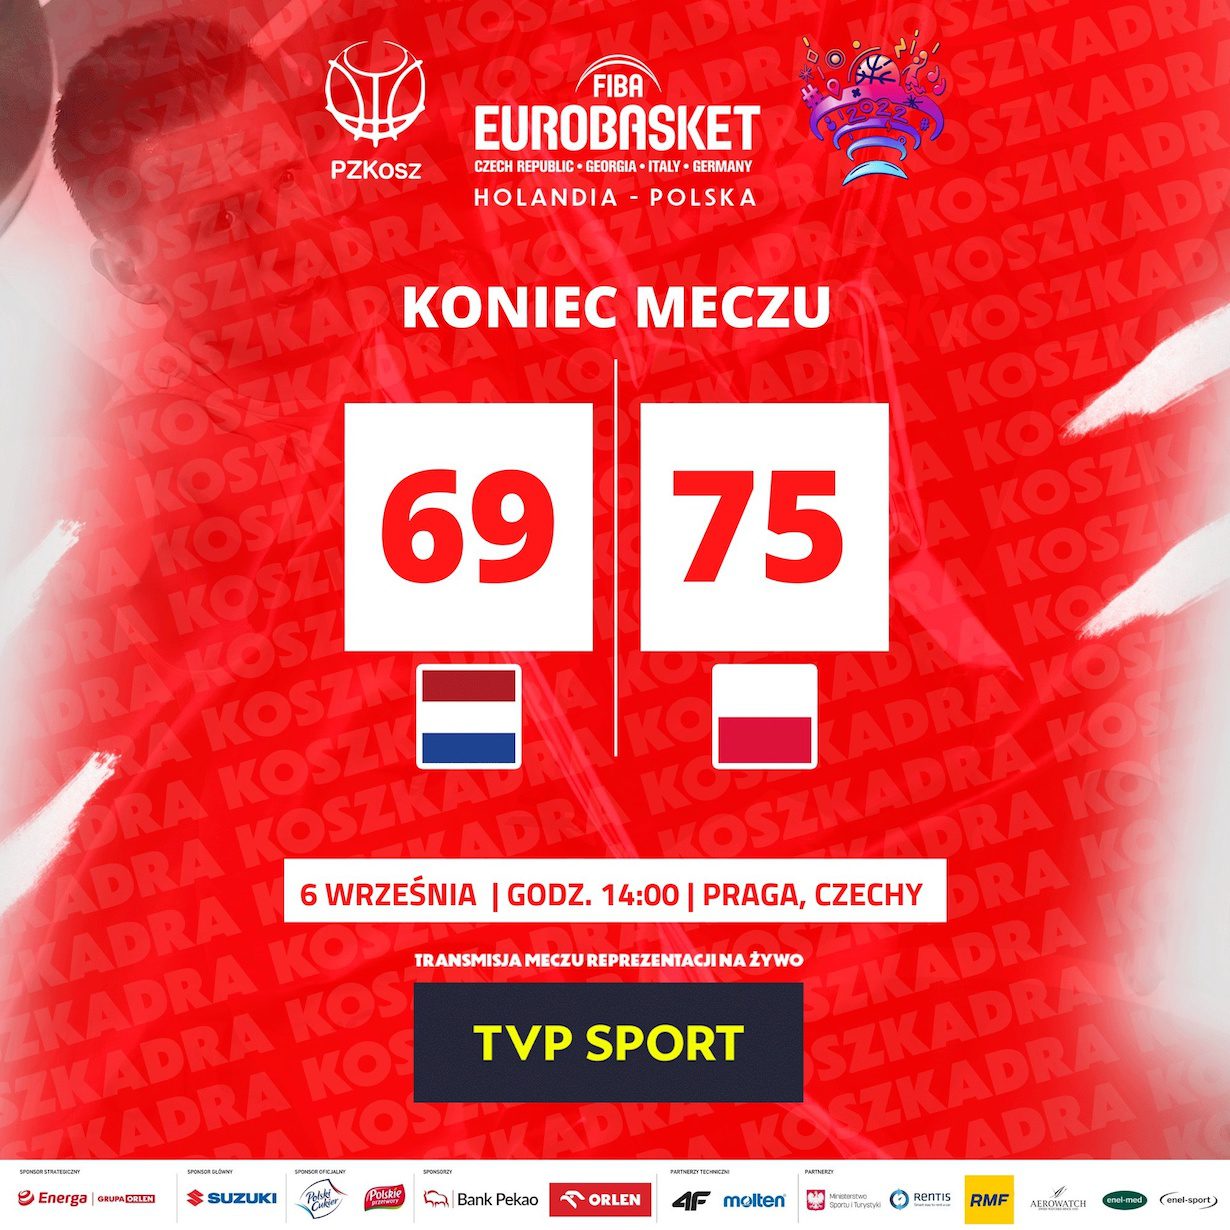 Polska vs Serbia. Polacy zagrają przeciwko MVP NBA! Gdzie oglądać mecz?